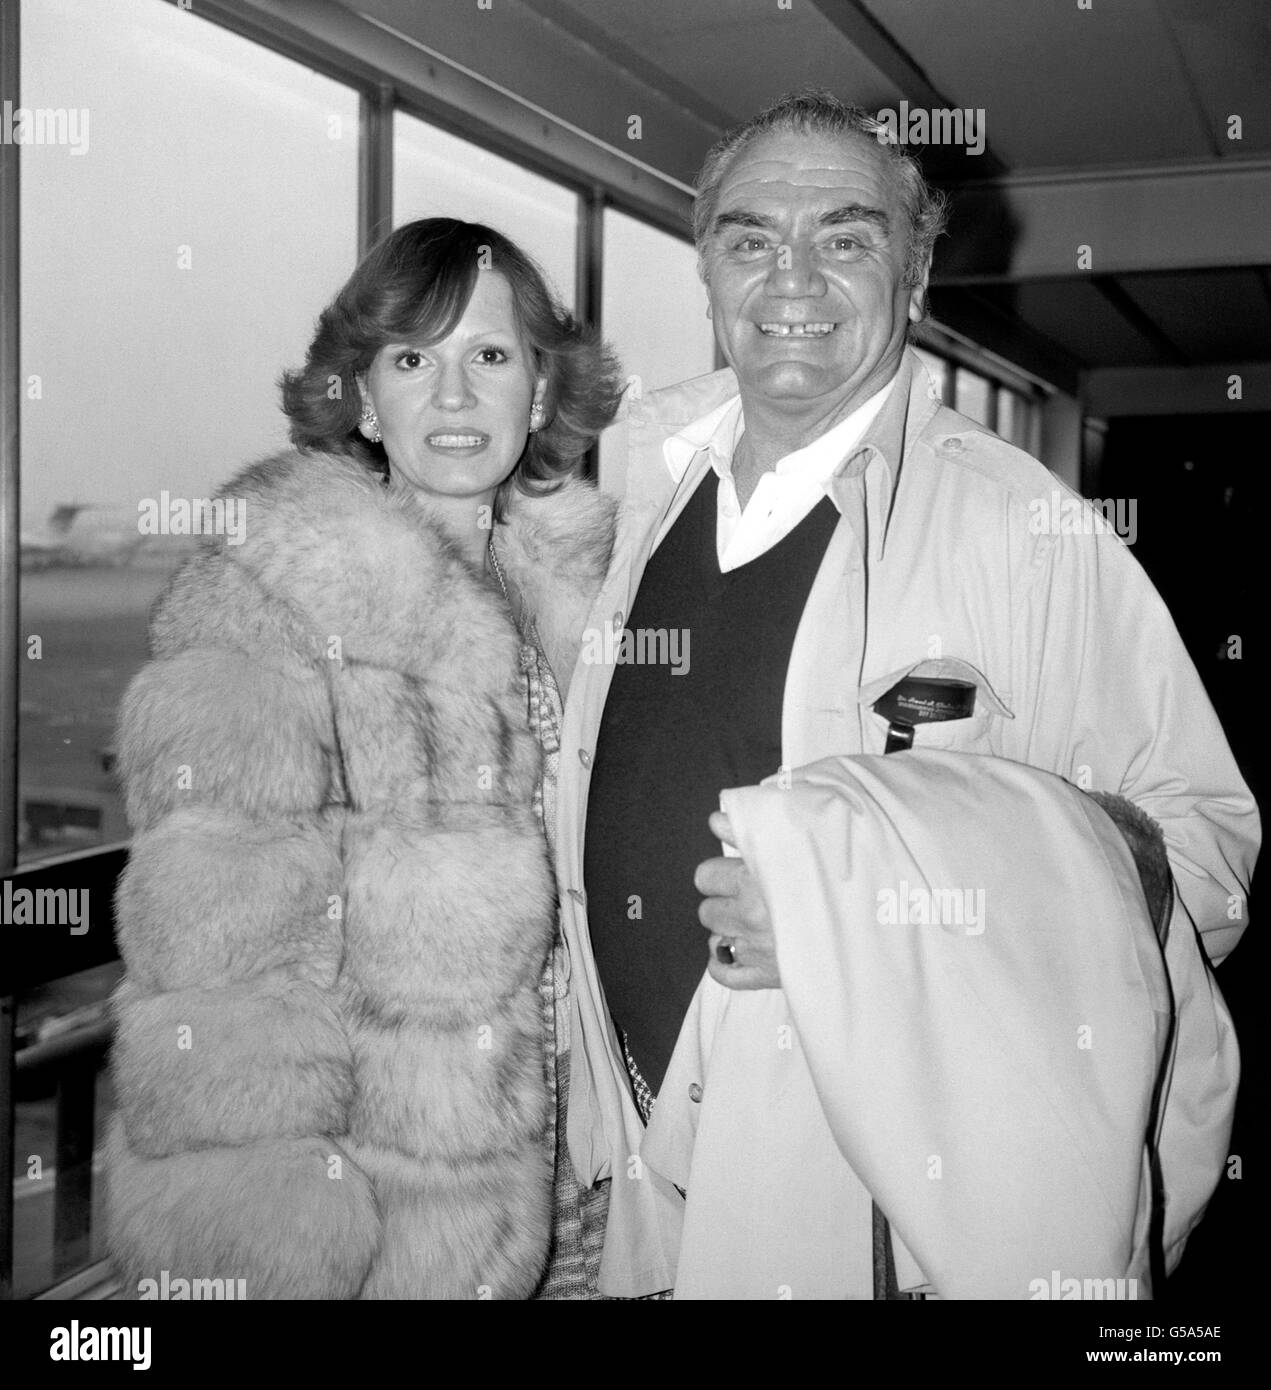 L'attore americano Ernest Borgnine e la sua quinta moglie norvegese Tove all'aeroporto di Heathrow. Stavano passando per Los Angeles da Roma, dove il signor Borgnine ha fatto un film dal titolo "i Diari di Miss X" Foto Stock